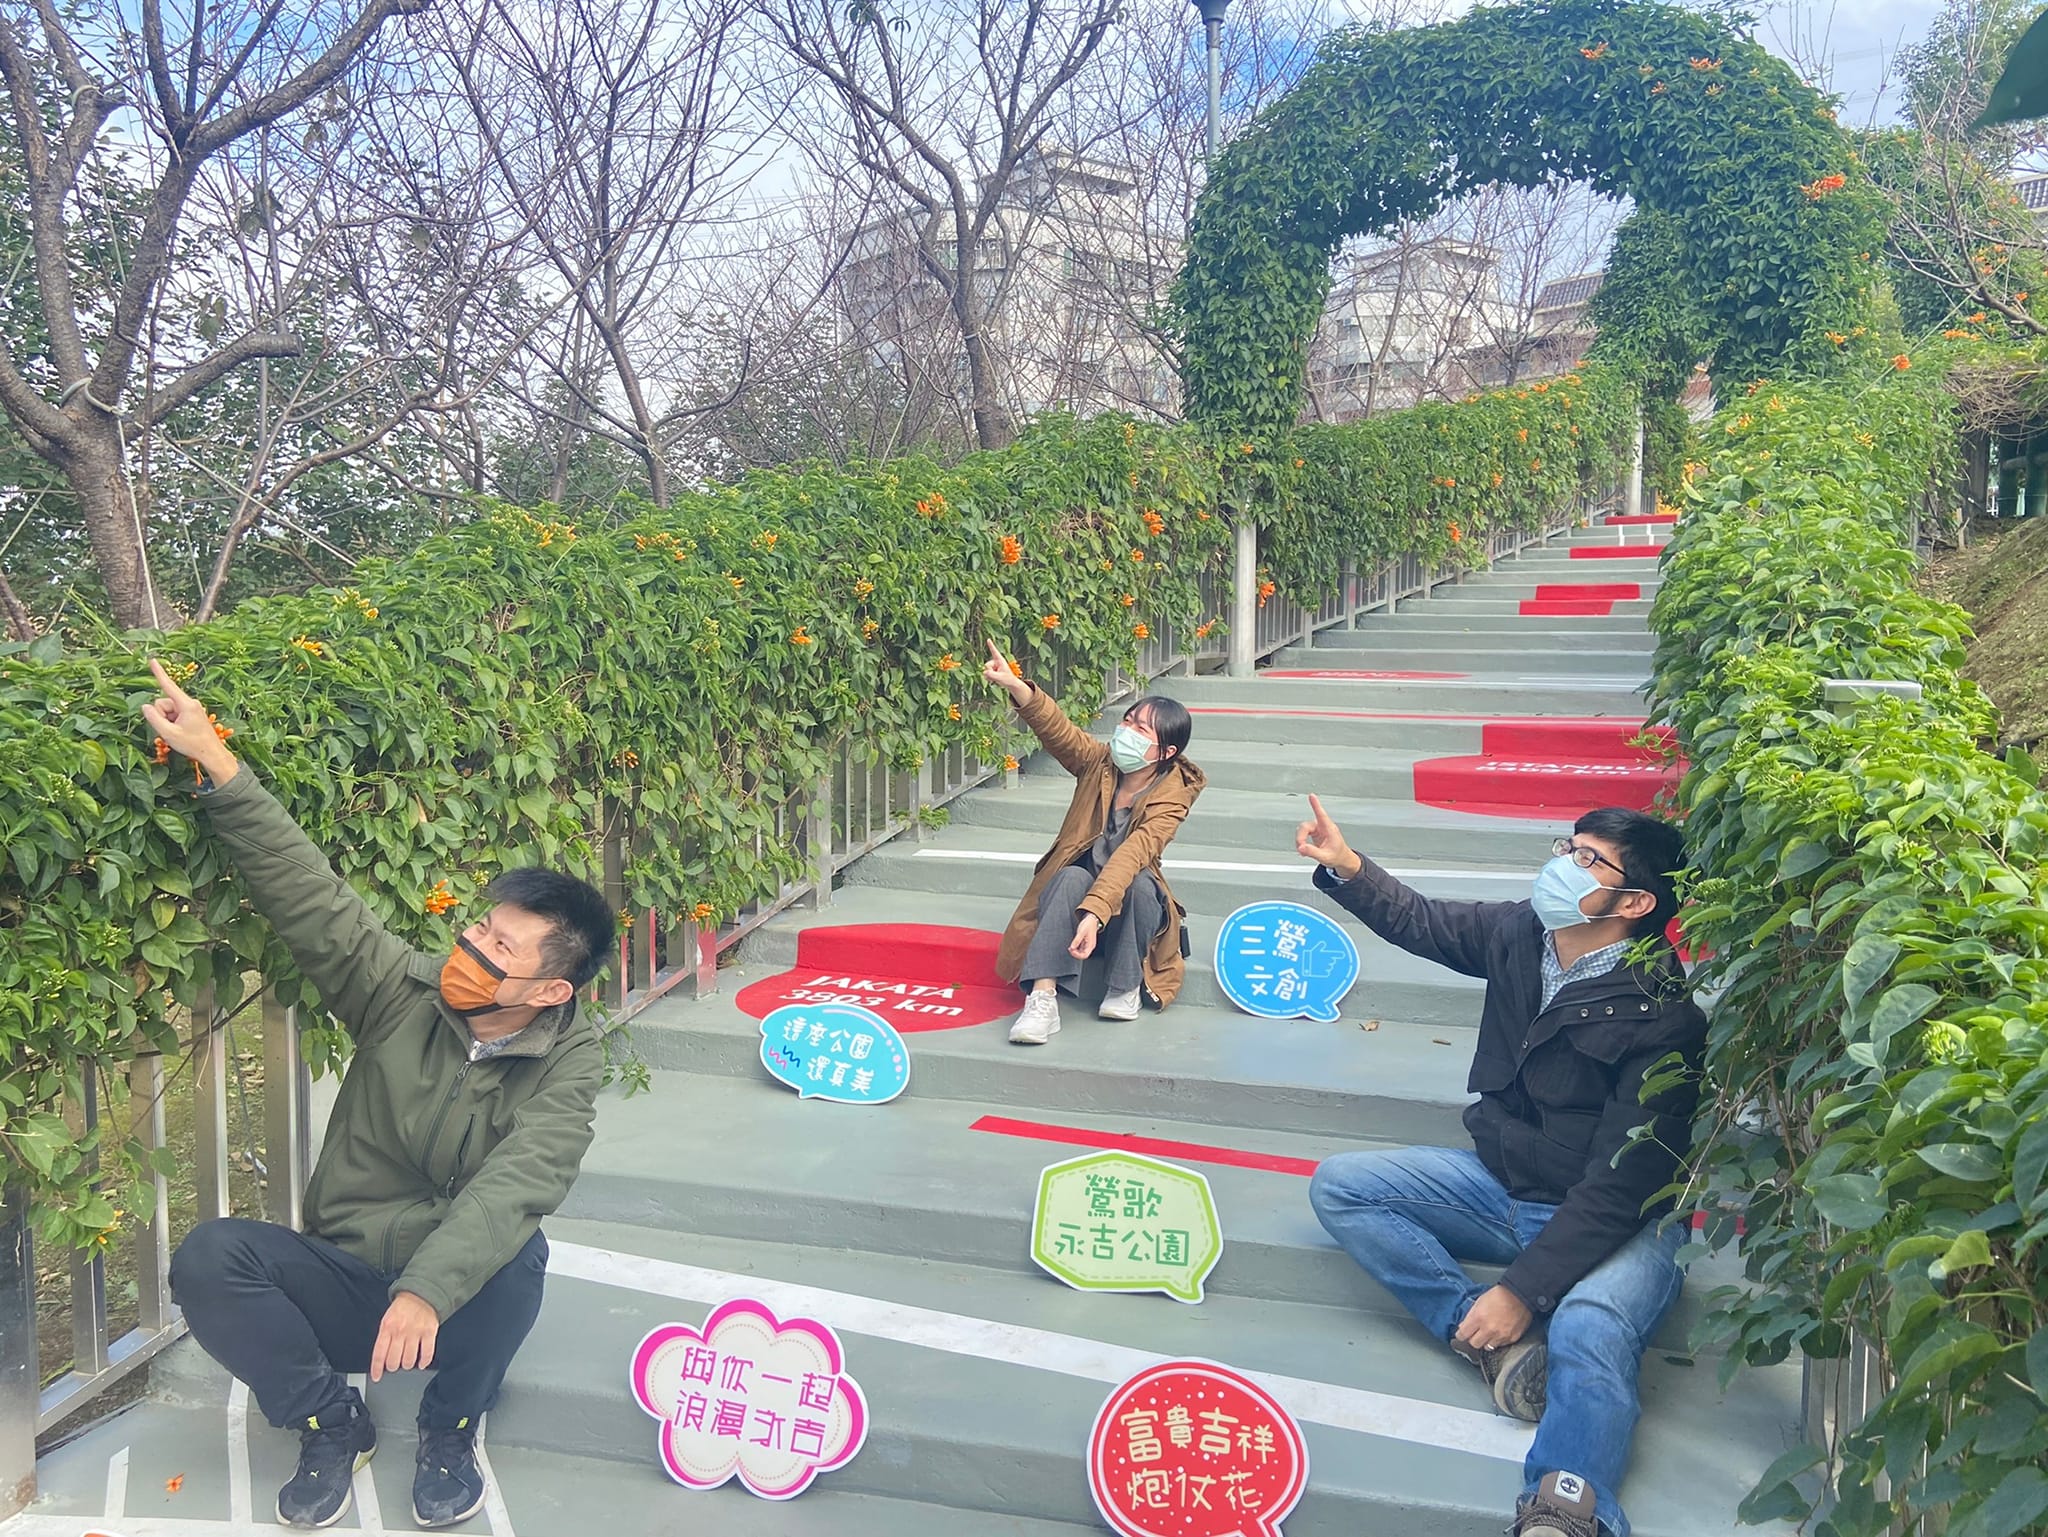 20220121永吉公園花廊步道彩繪美學再升級-7